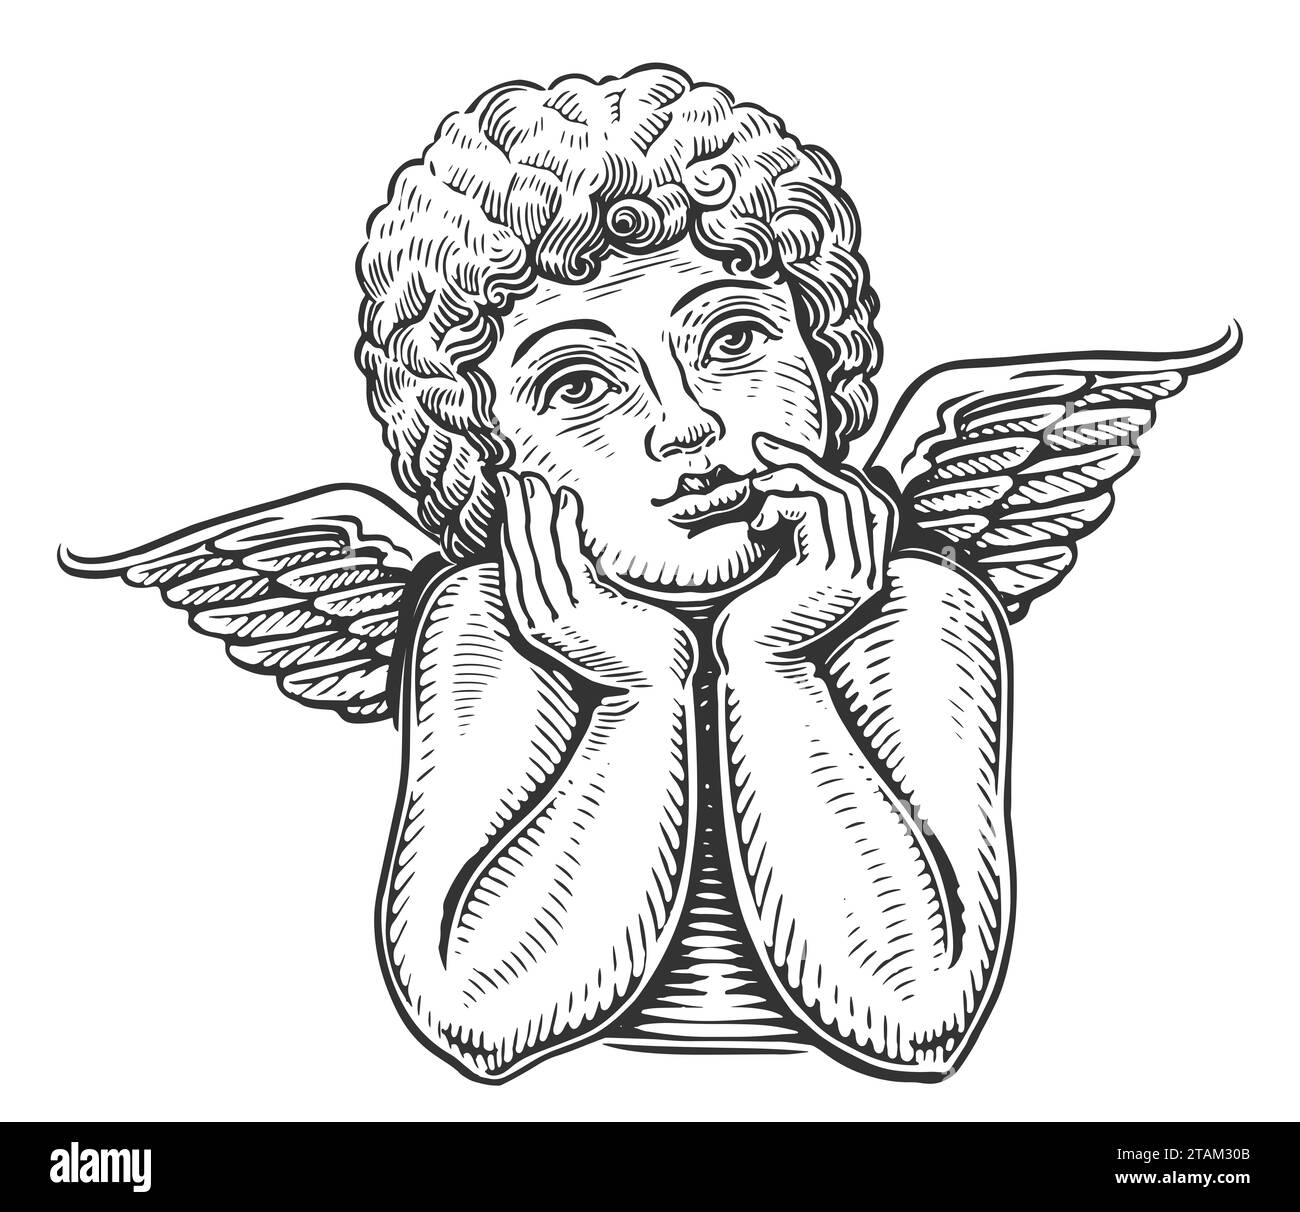 Pensif mignon ange enfant. Bébé mignon avec des ailes. Dessin dessiné à la main illustration vintage Banque D'Images